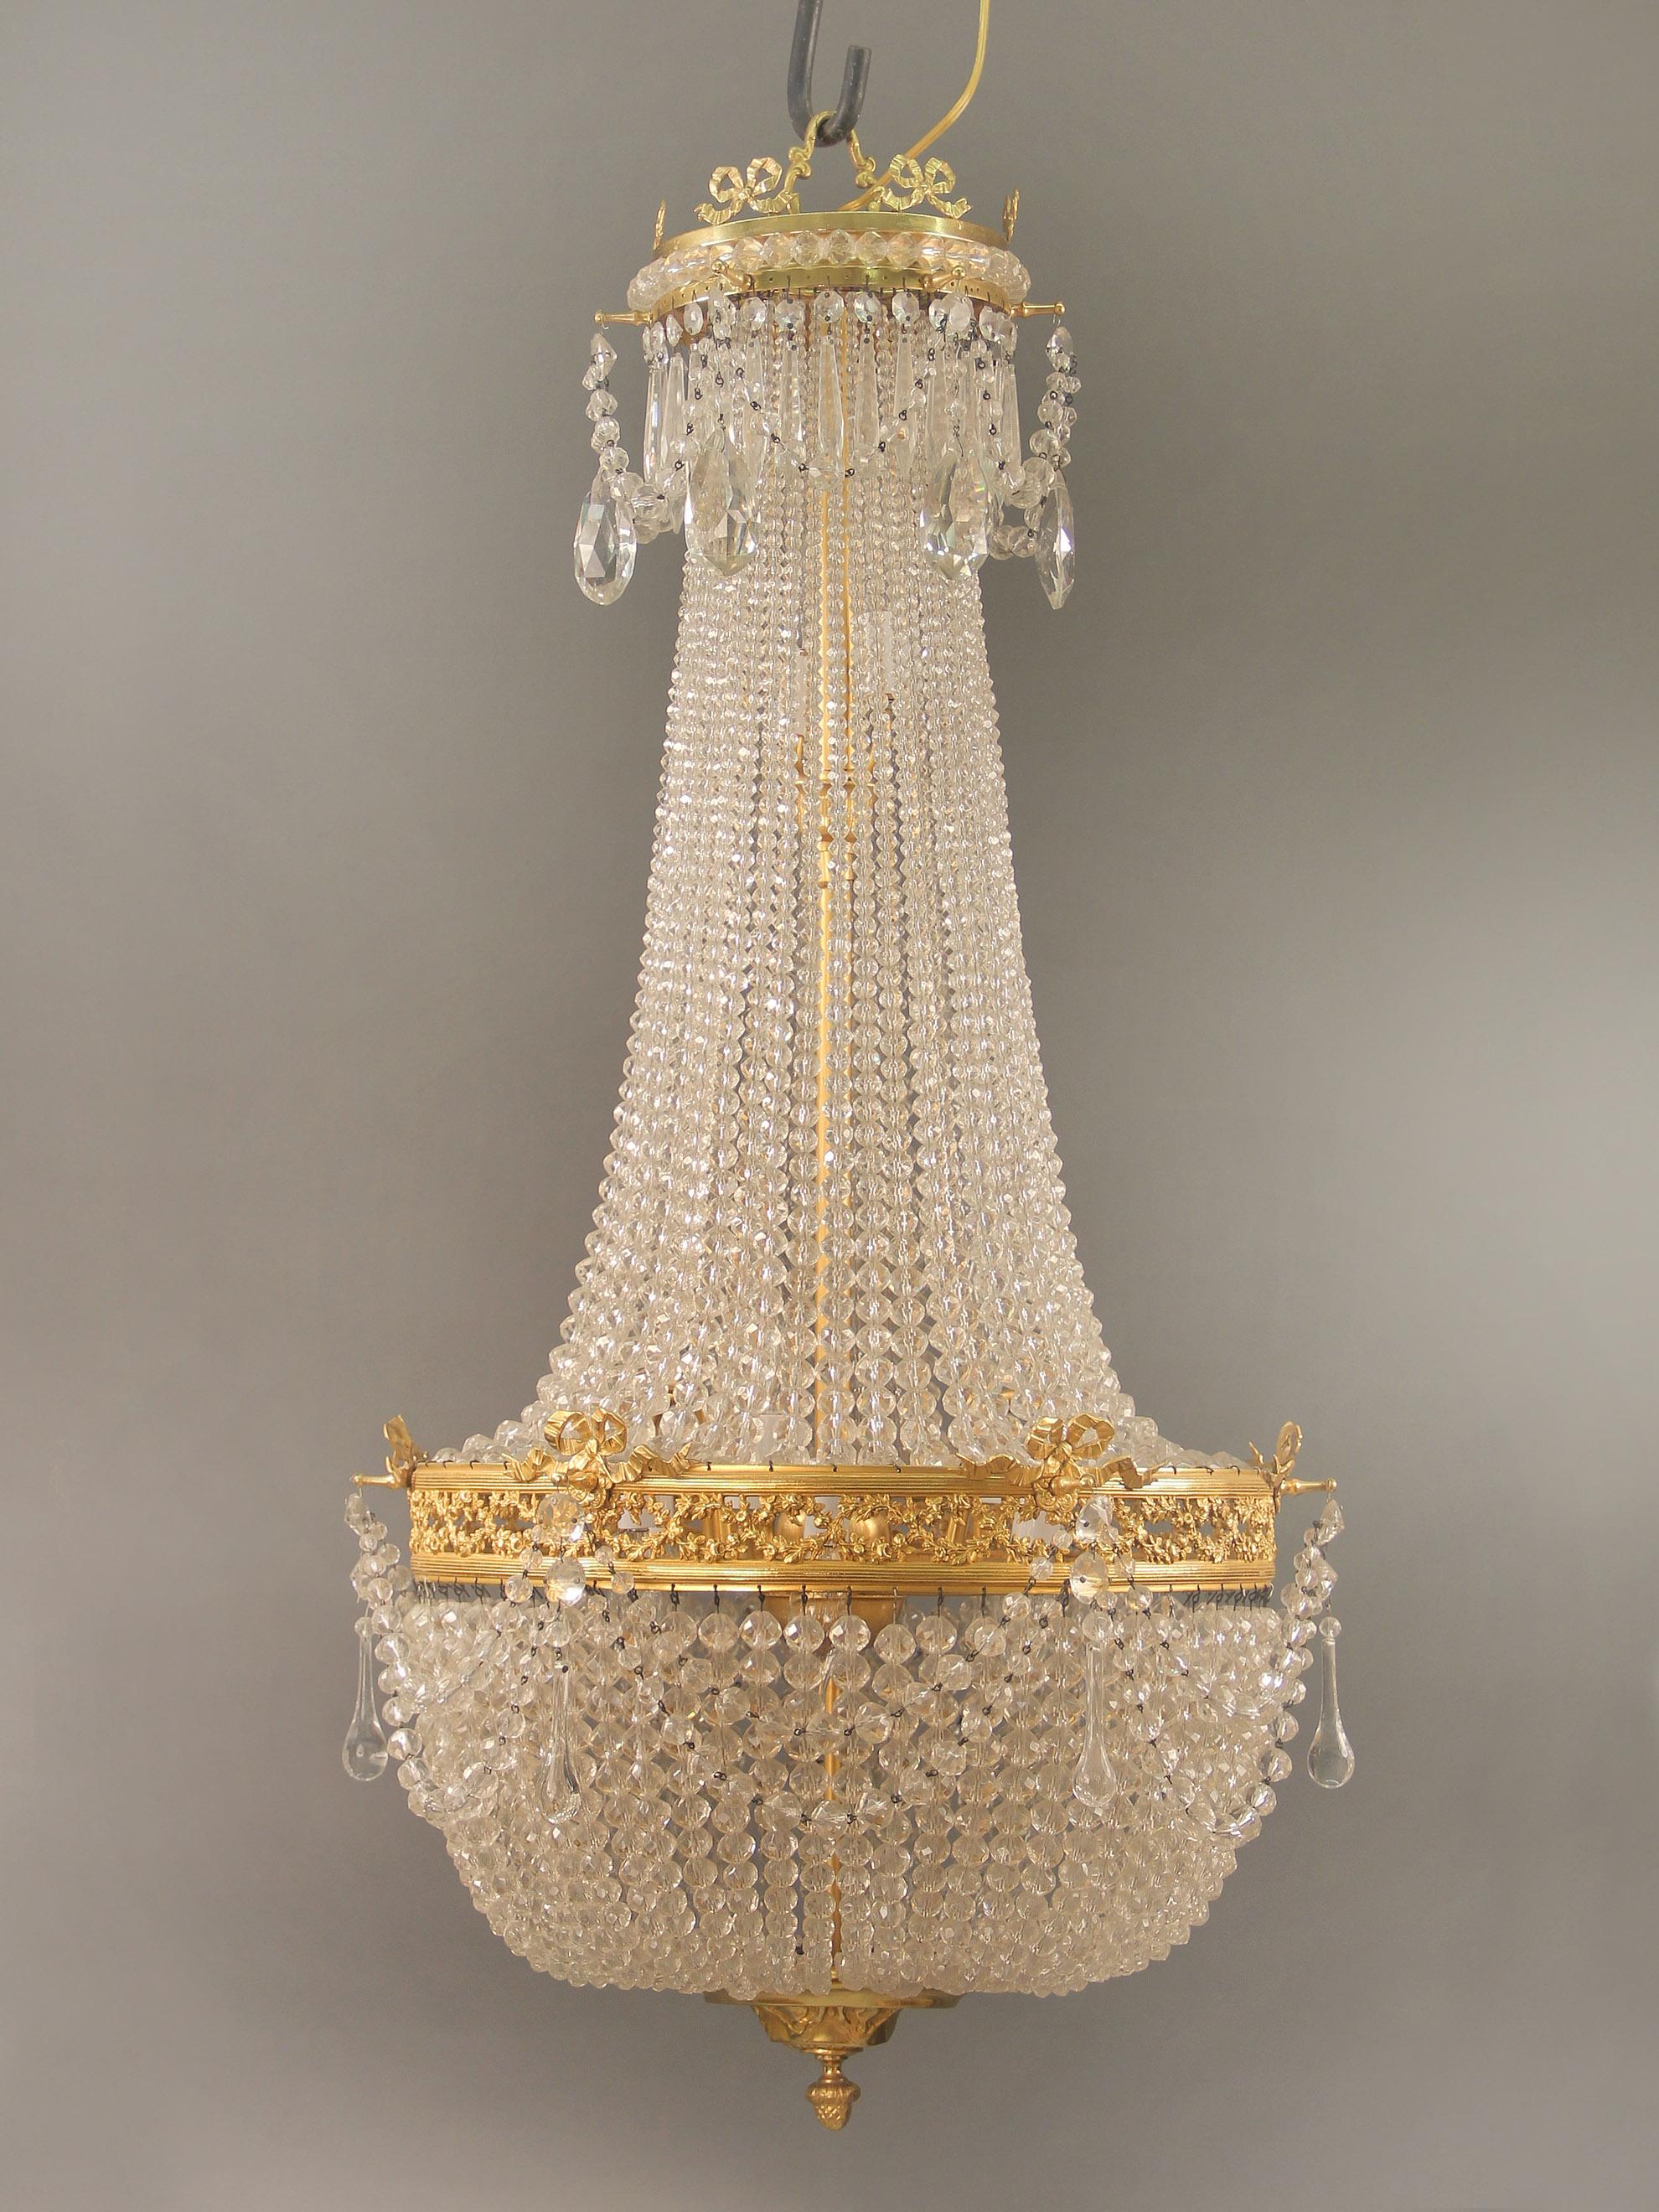 Lustre à onze lumières en bronze doré avec panier perlé de la fin du 19e siècle

La couronne est ornée de nœuds de bronze surmontant des cristaux en goutte d'eau et des guirlandes de perles. Les perles sont reliées à une frise de guirlandes